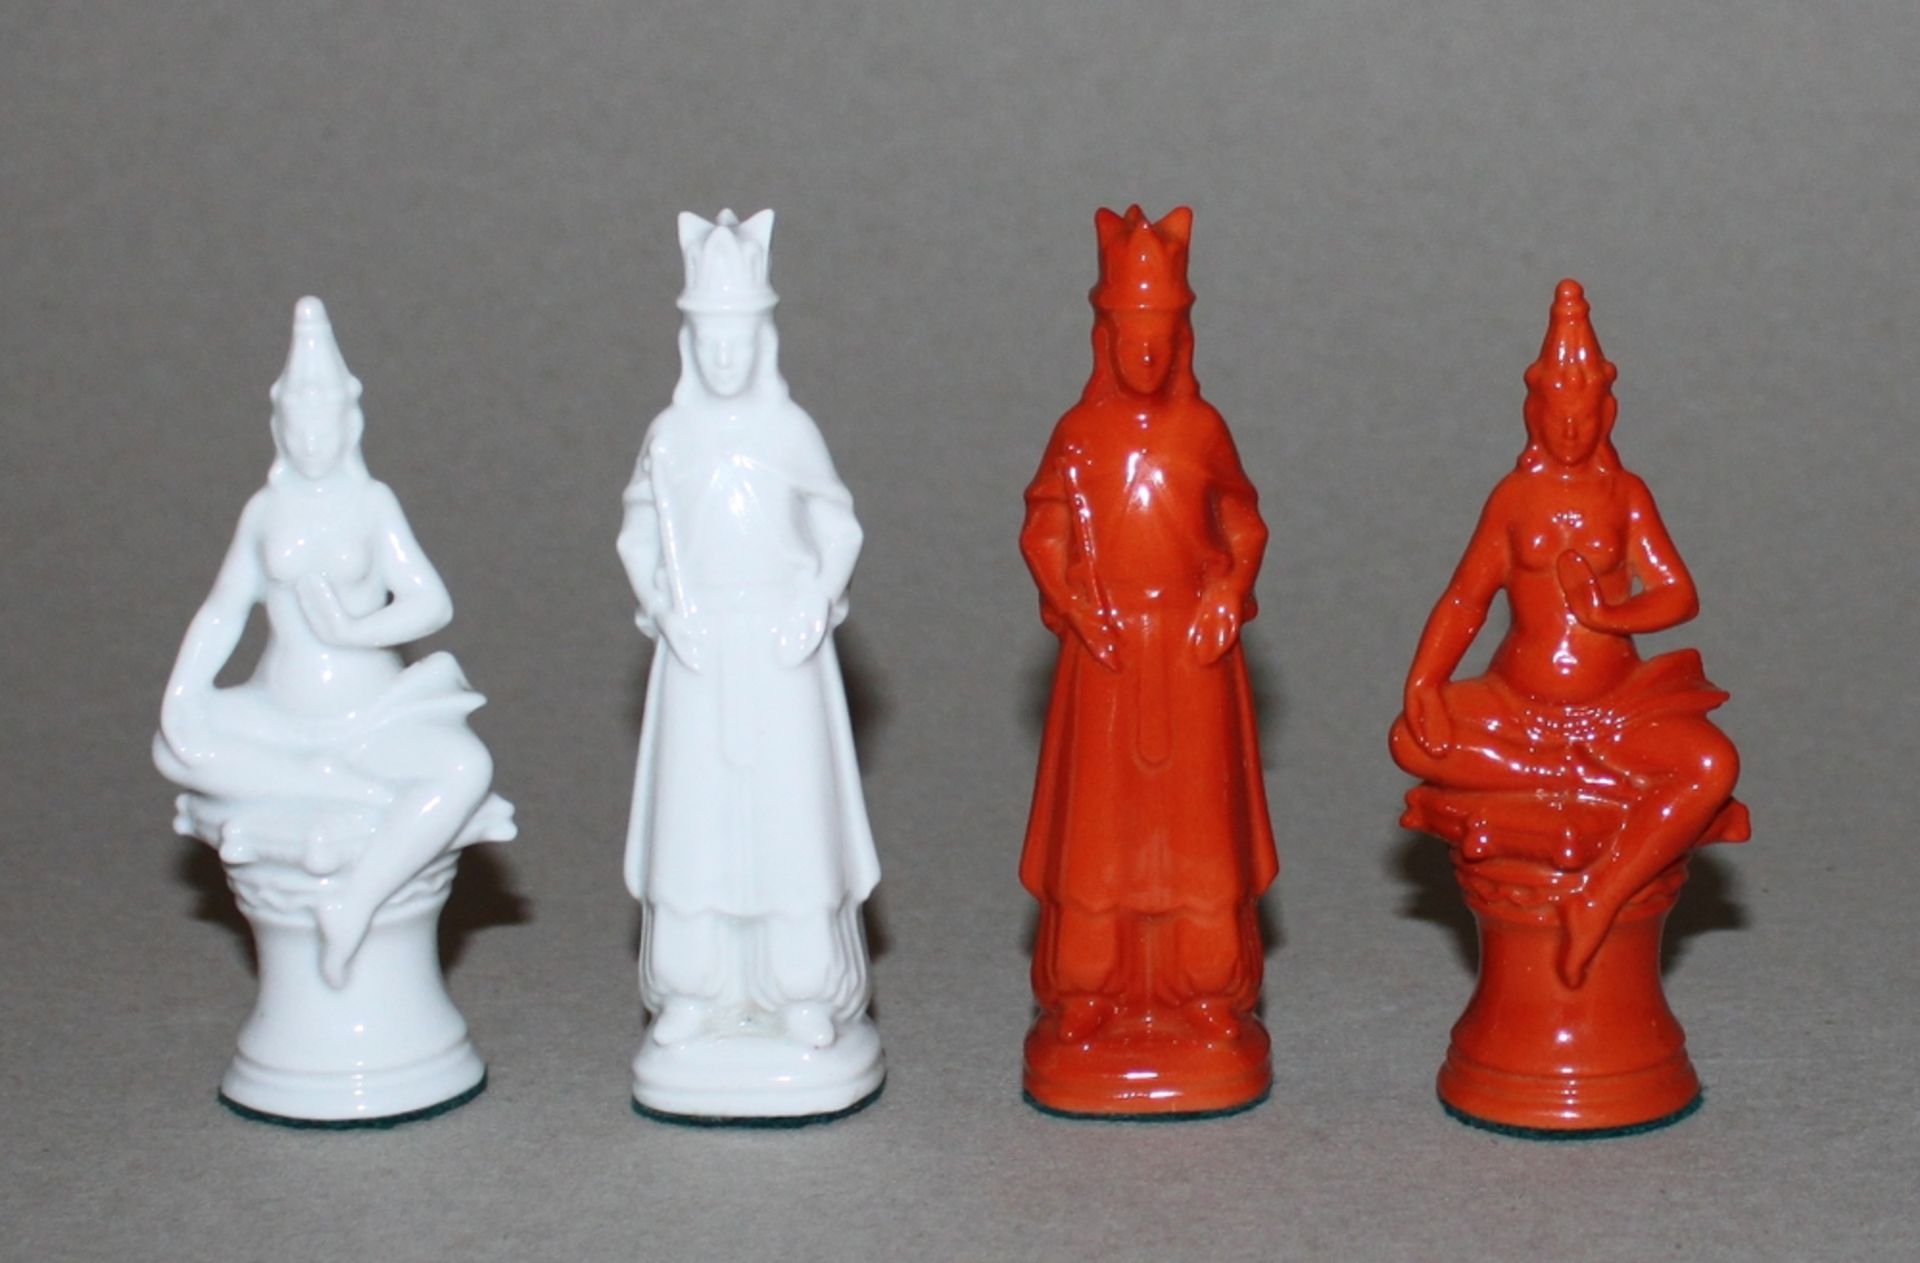 Asien. Schachfiguren aus Porzellan, zum Teil in unterschiedlichen asiatischen Stilrichtungen. Eine